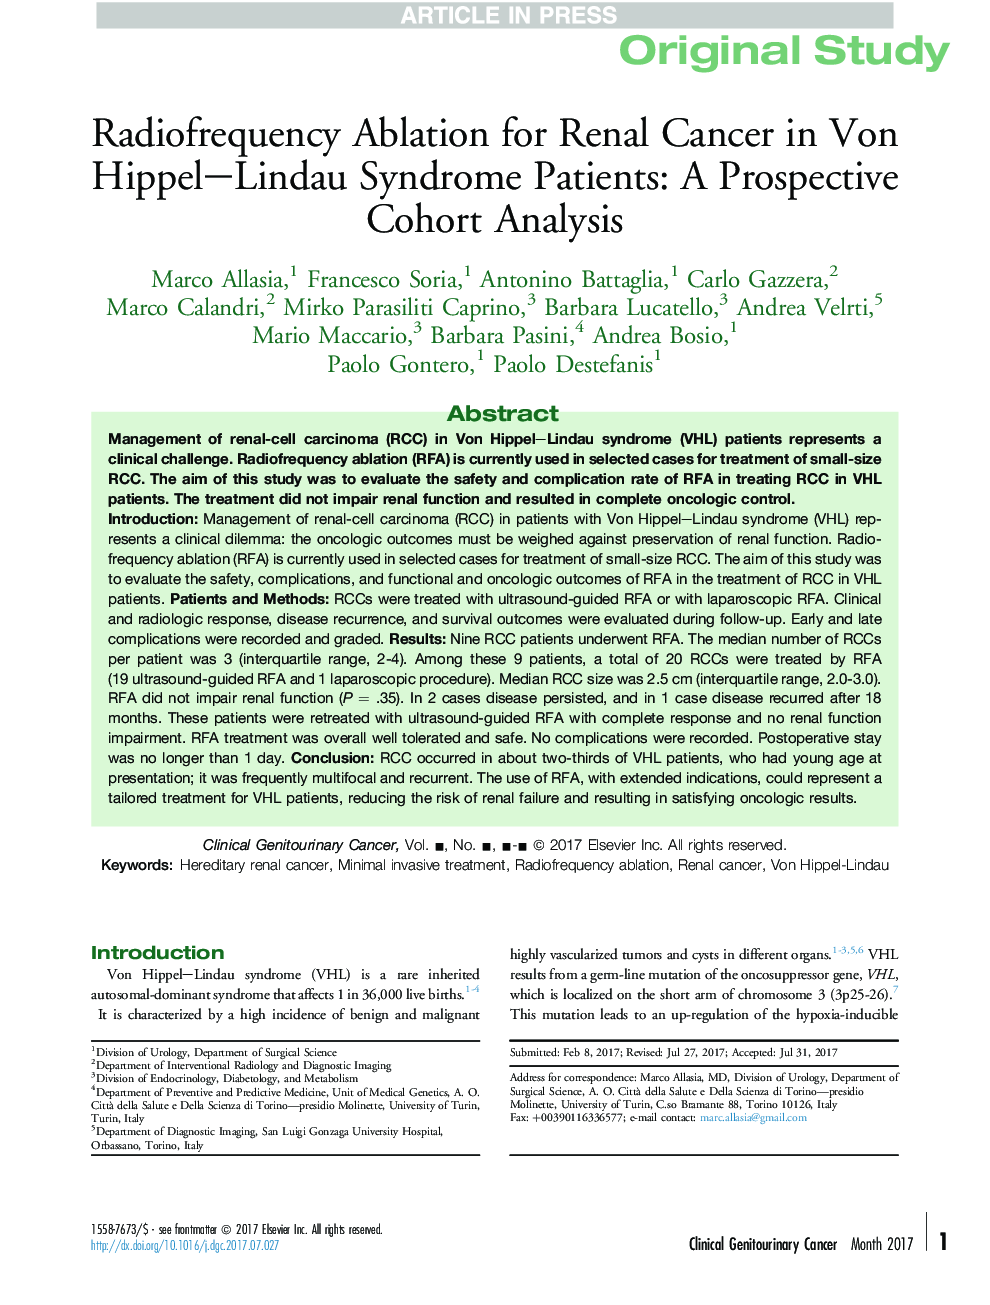 کاهش ریفلاکس برای سرطان کلیه در بیماران مبتلا به سندرم فون هیپال لینادو: یک تحلیل کوهورت چشمگیر 